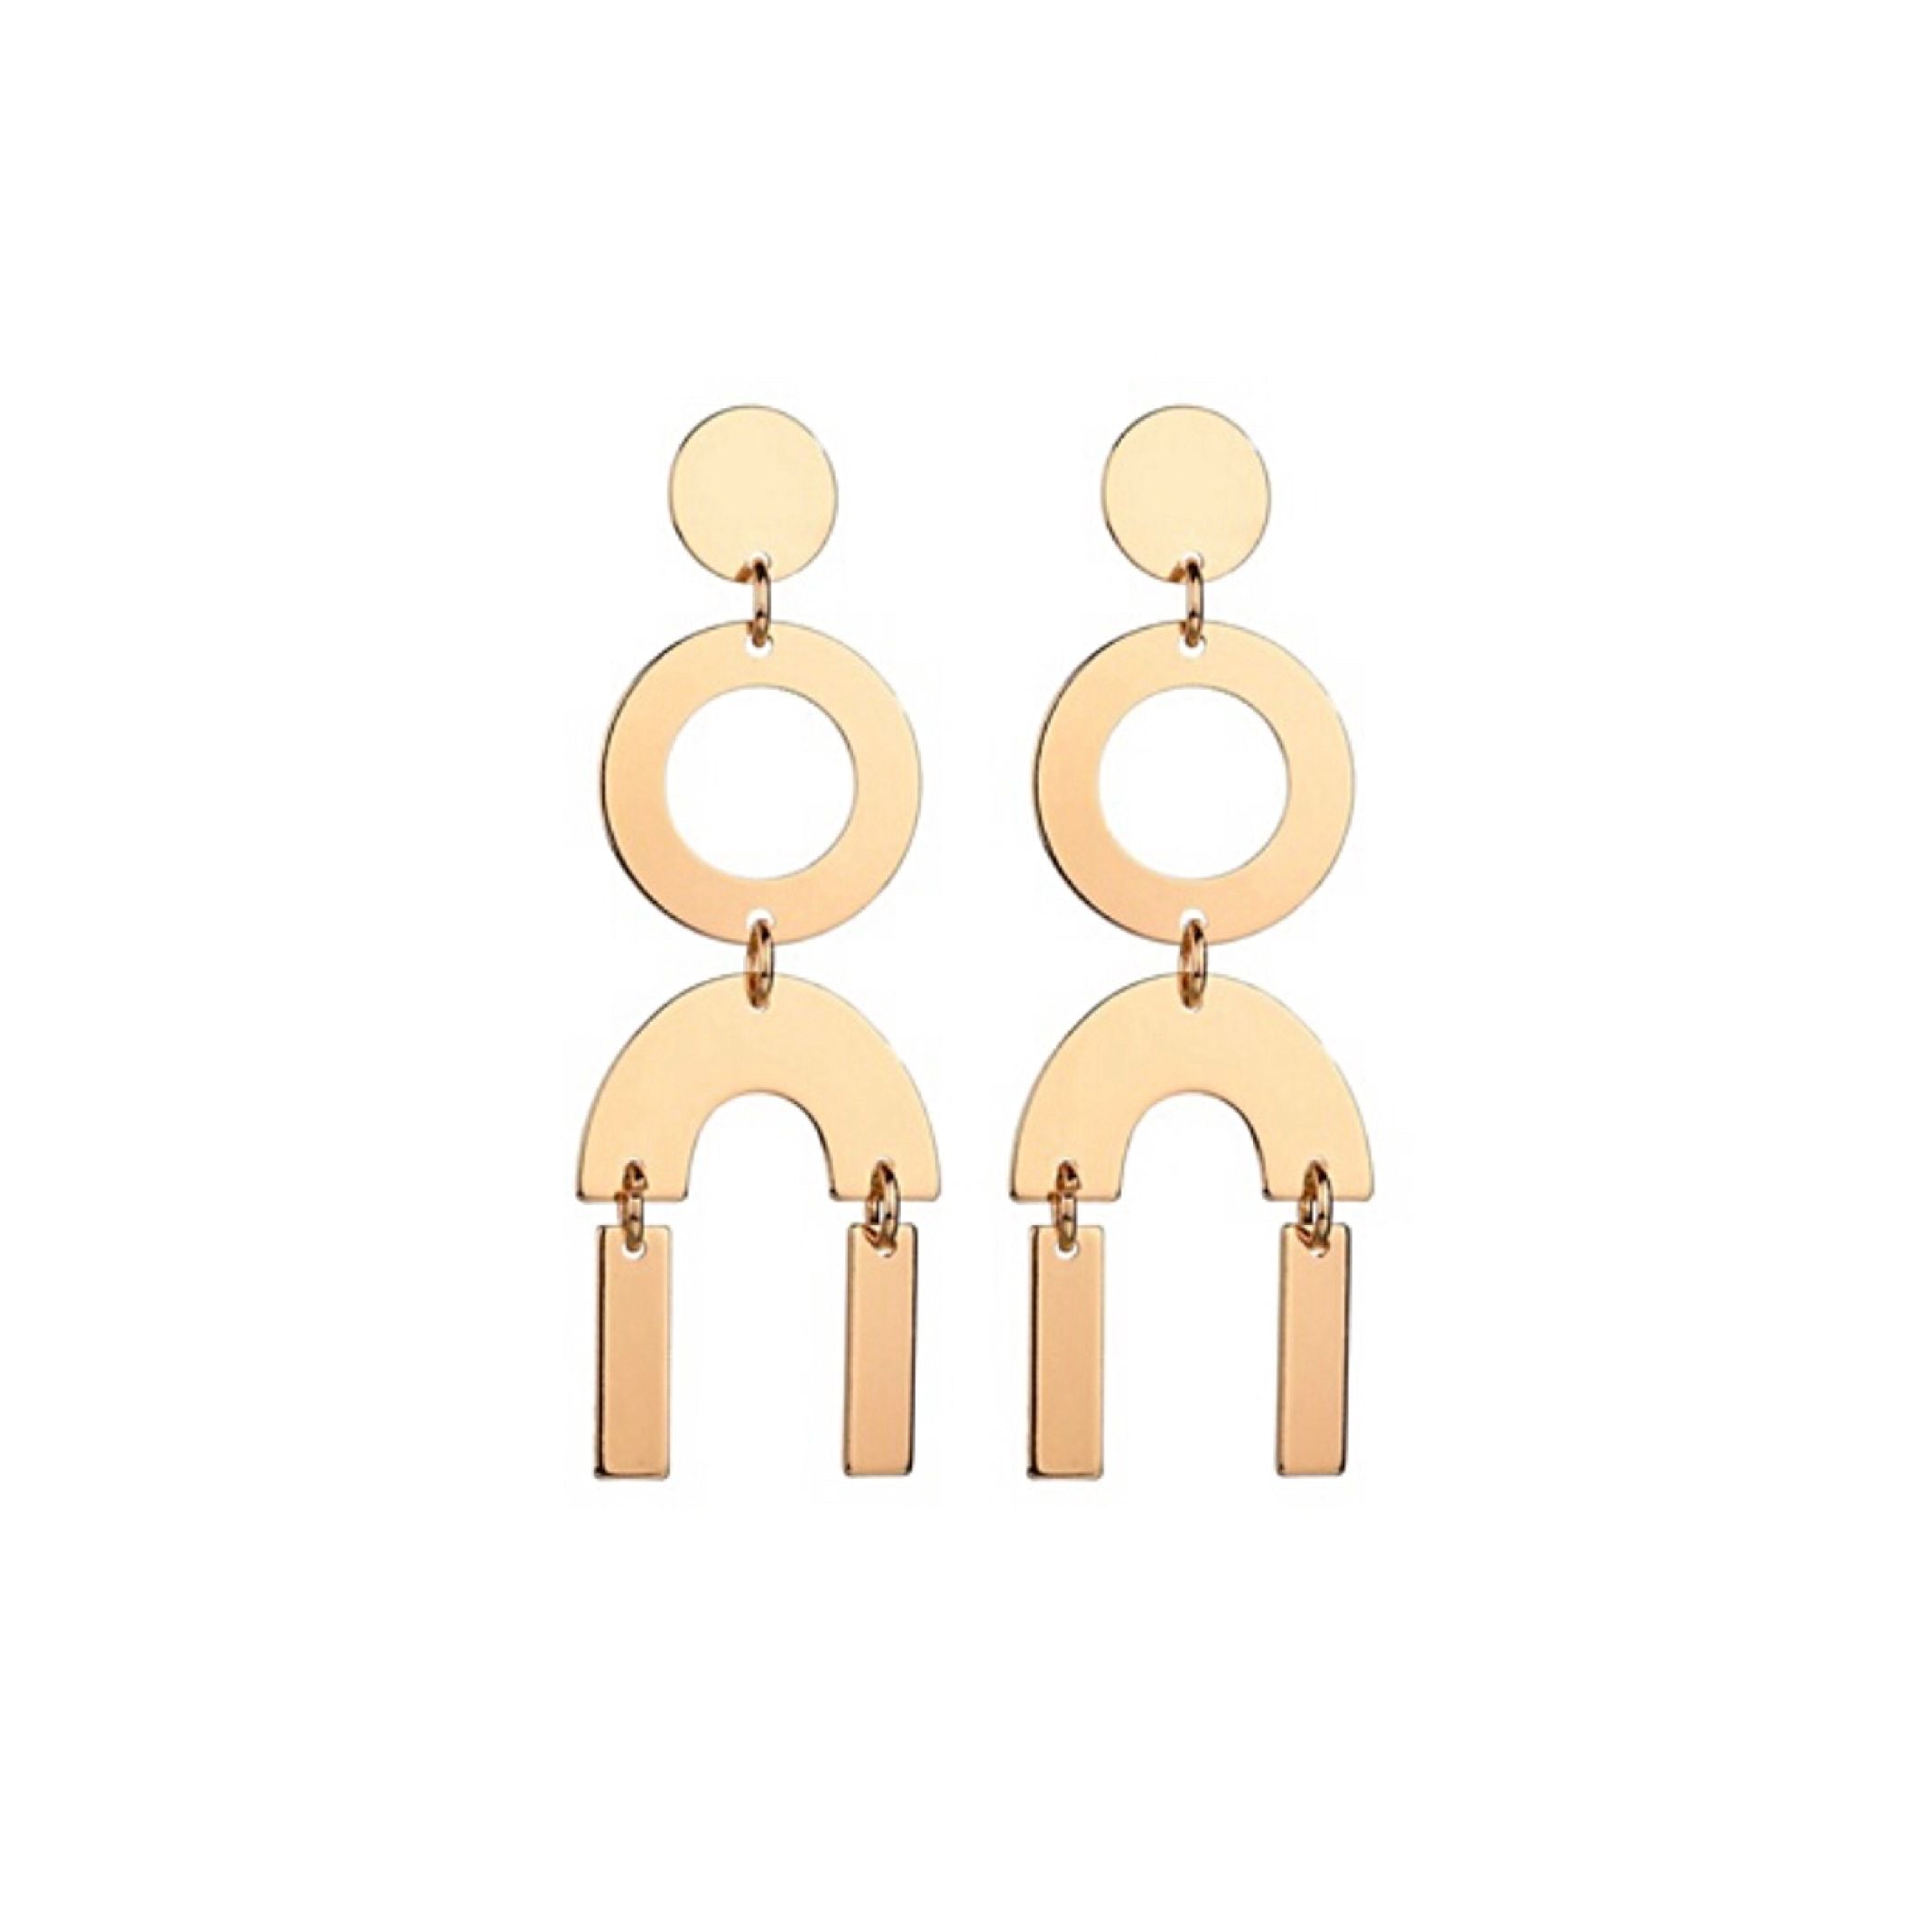 Mirrored geo earrings 